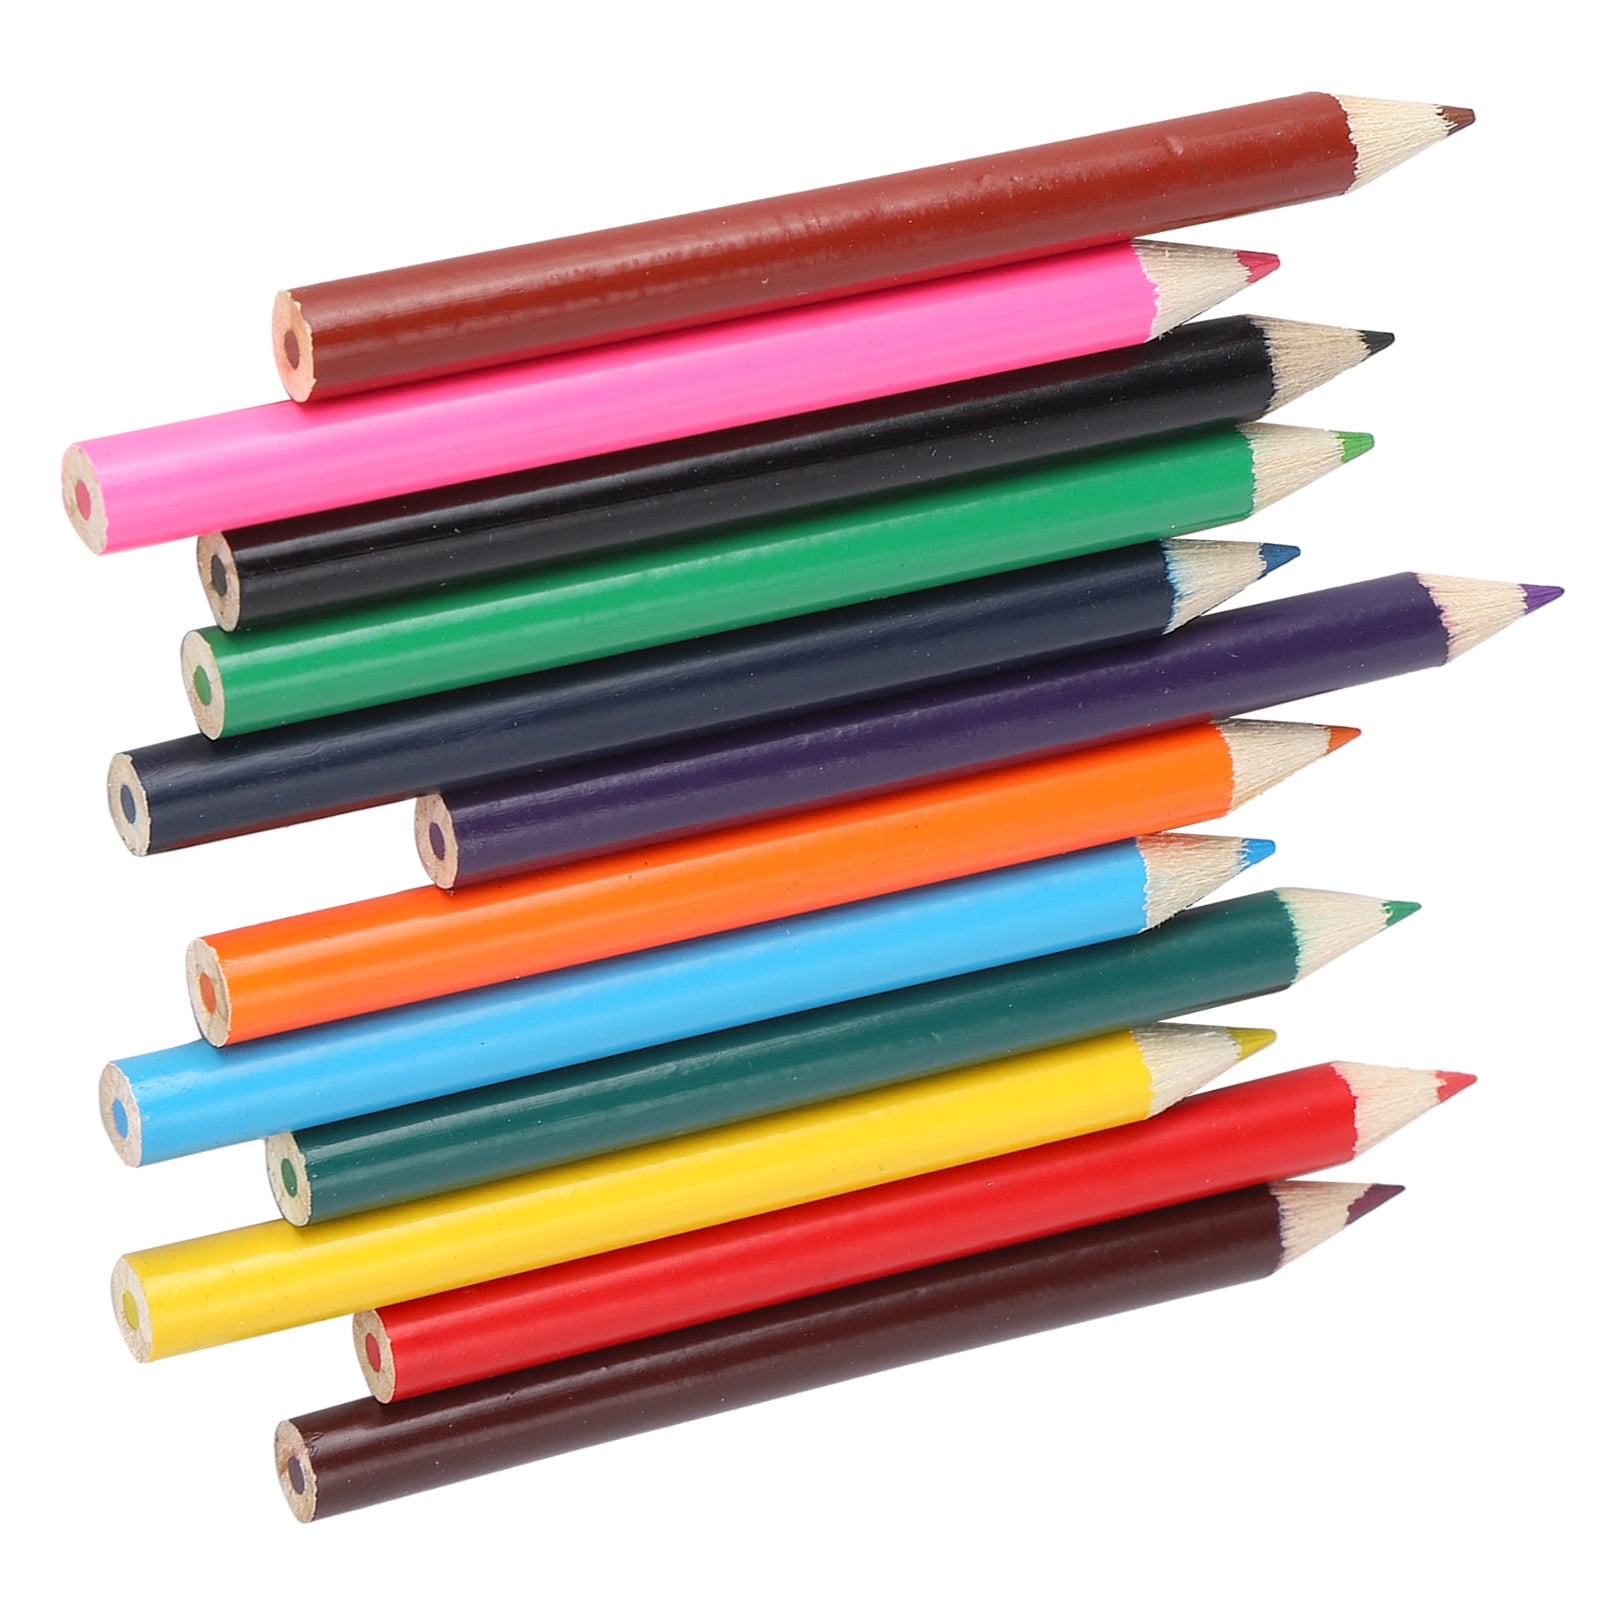  Castle Art Supplies 72 Colored Pencils + Sketchbooks Bundle, Premium Soft Series Colored Pencils in Decorative Tin Plus Drawing Paper